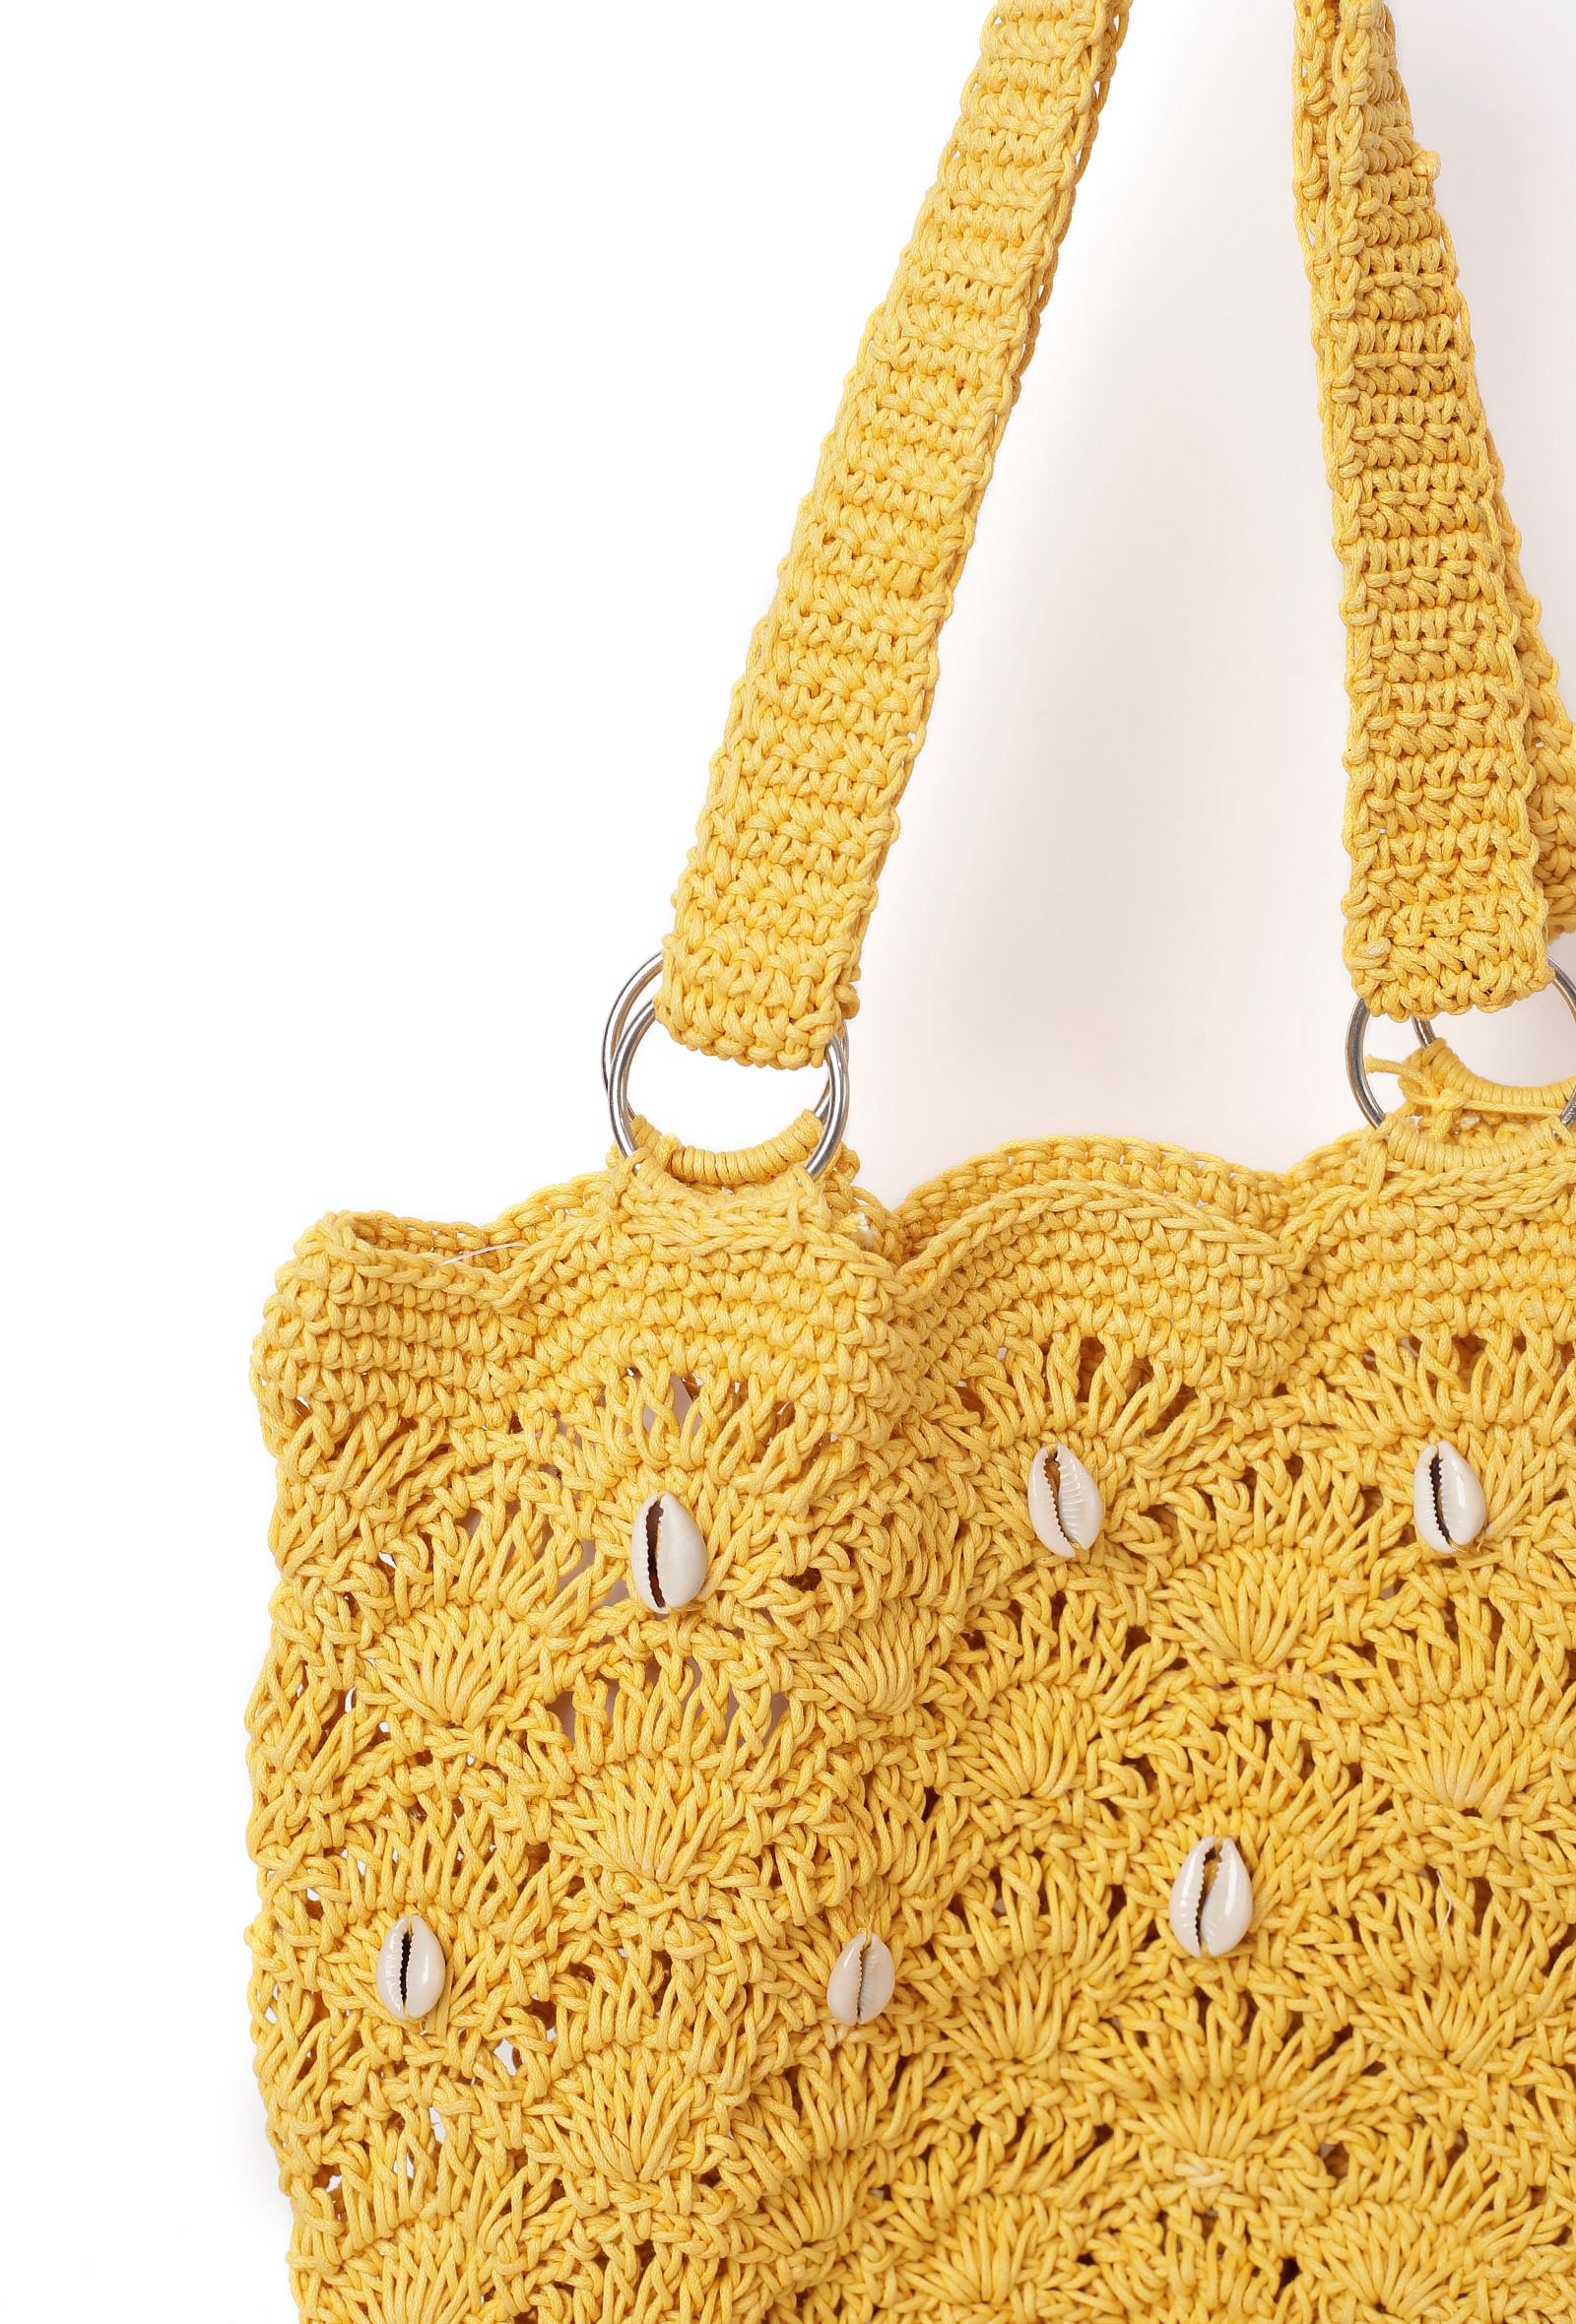 Stylish and Colorful Handmade Macrame Cotton Mobile Bag by Kaahira